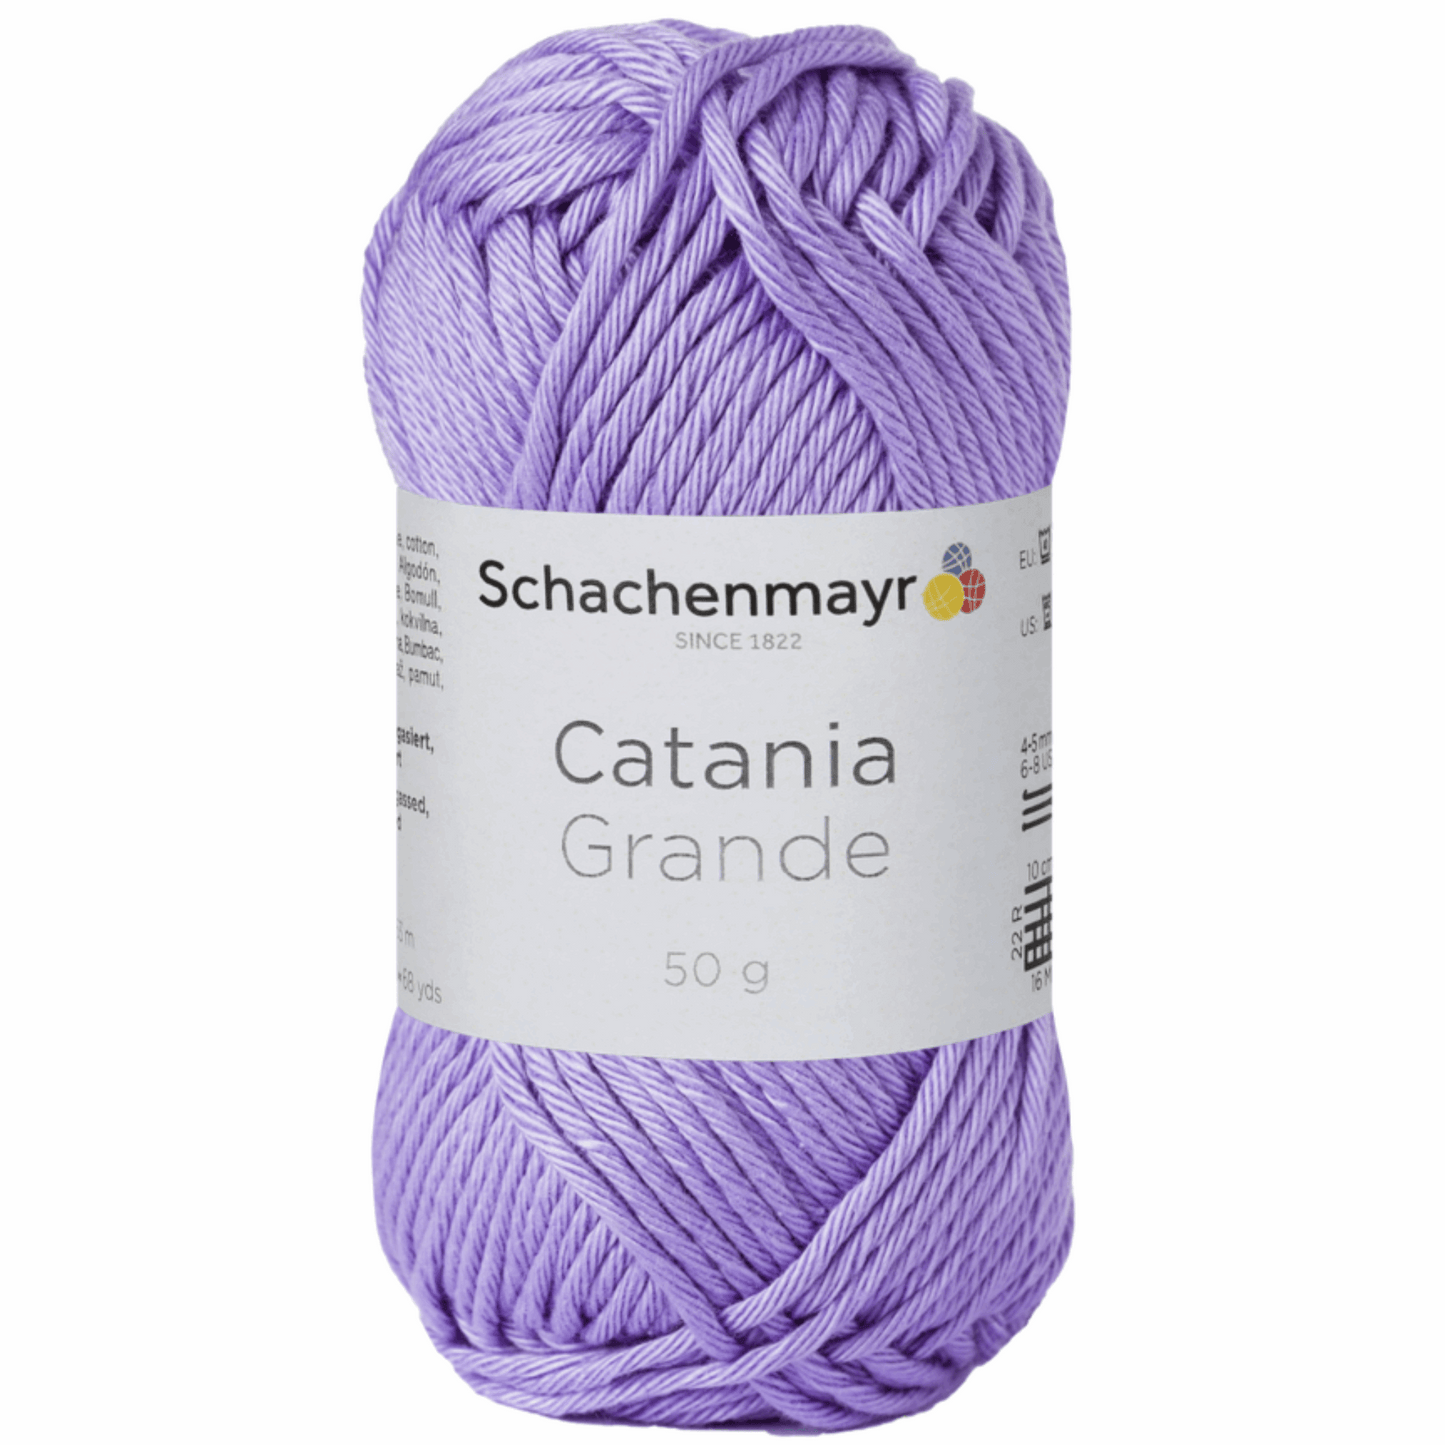 Catania Grande 50g, 90231, color 3208, lilac